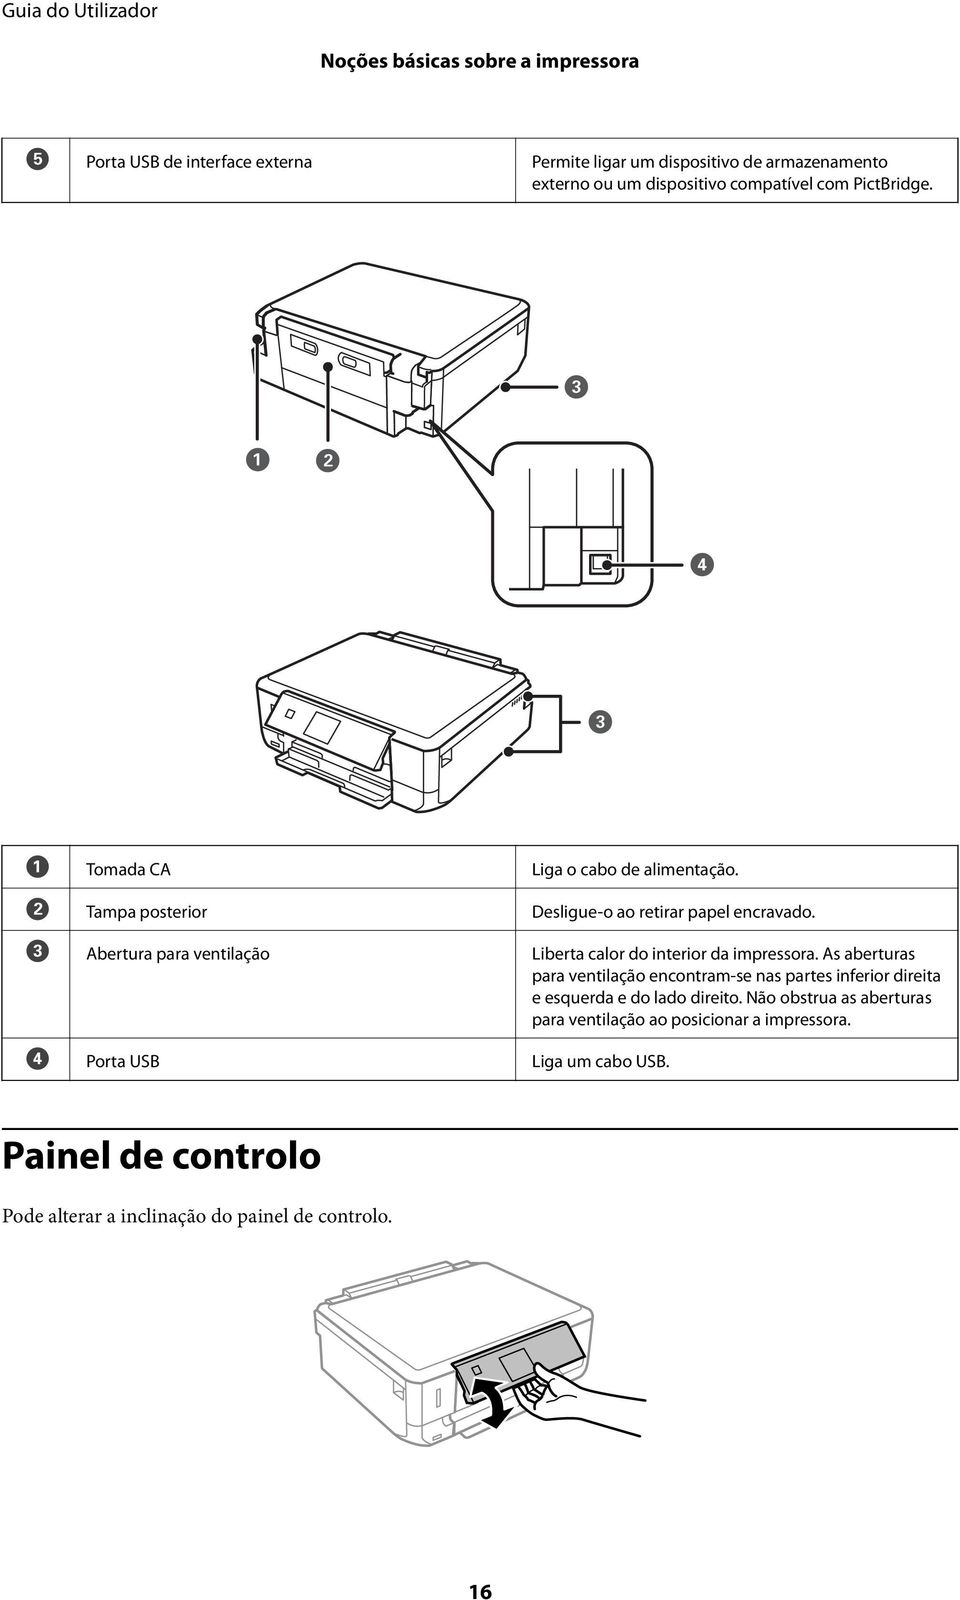 C Abertura para ventilação Liberta calor do interior da impressora.